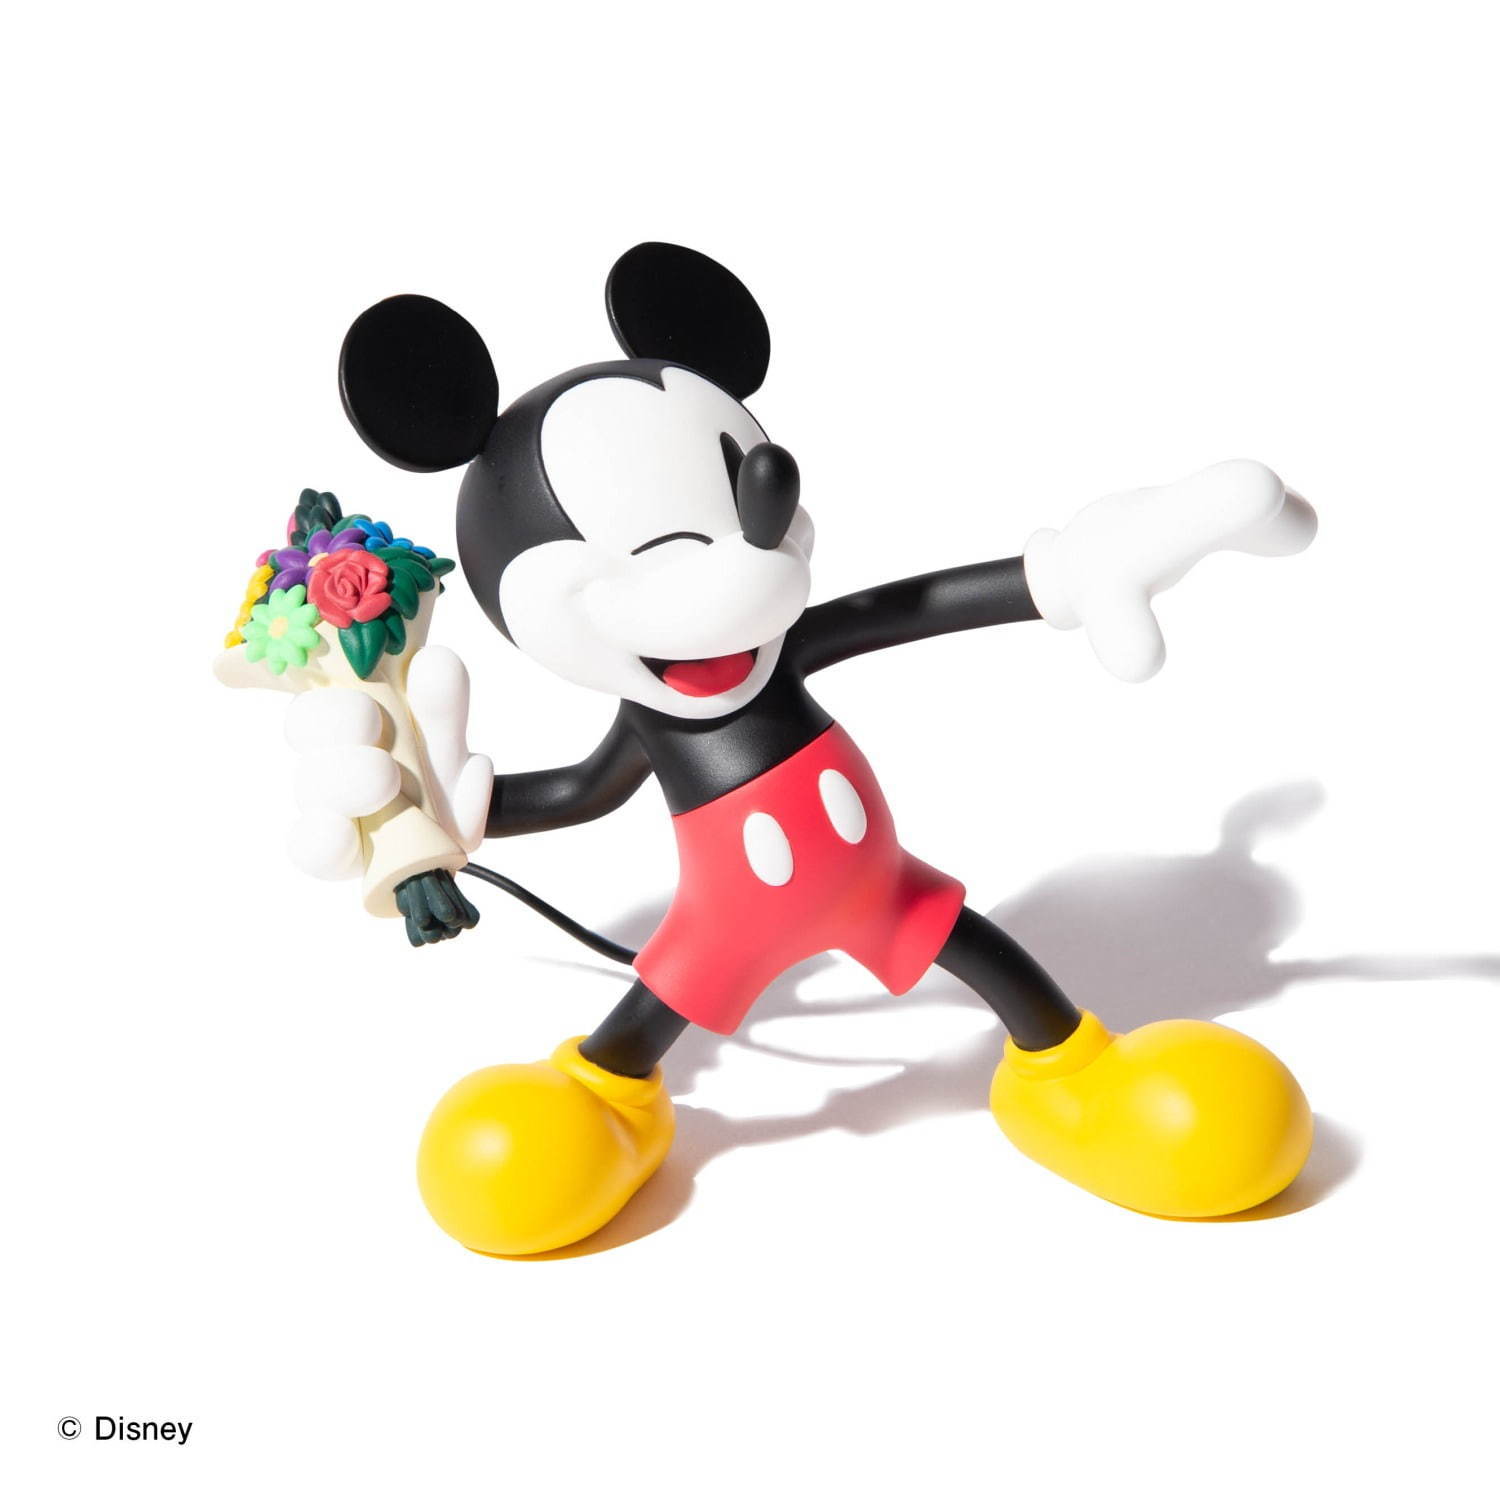 メディコム・トイ×glamb、花束を投げるミッキーマウスの限定フィギュア